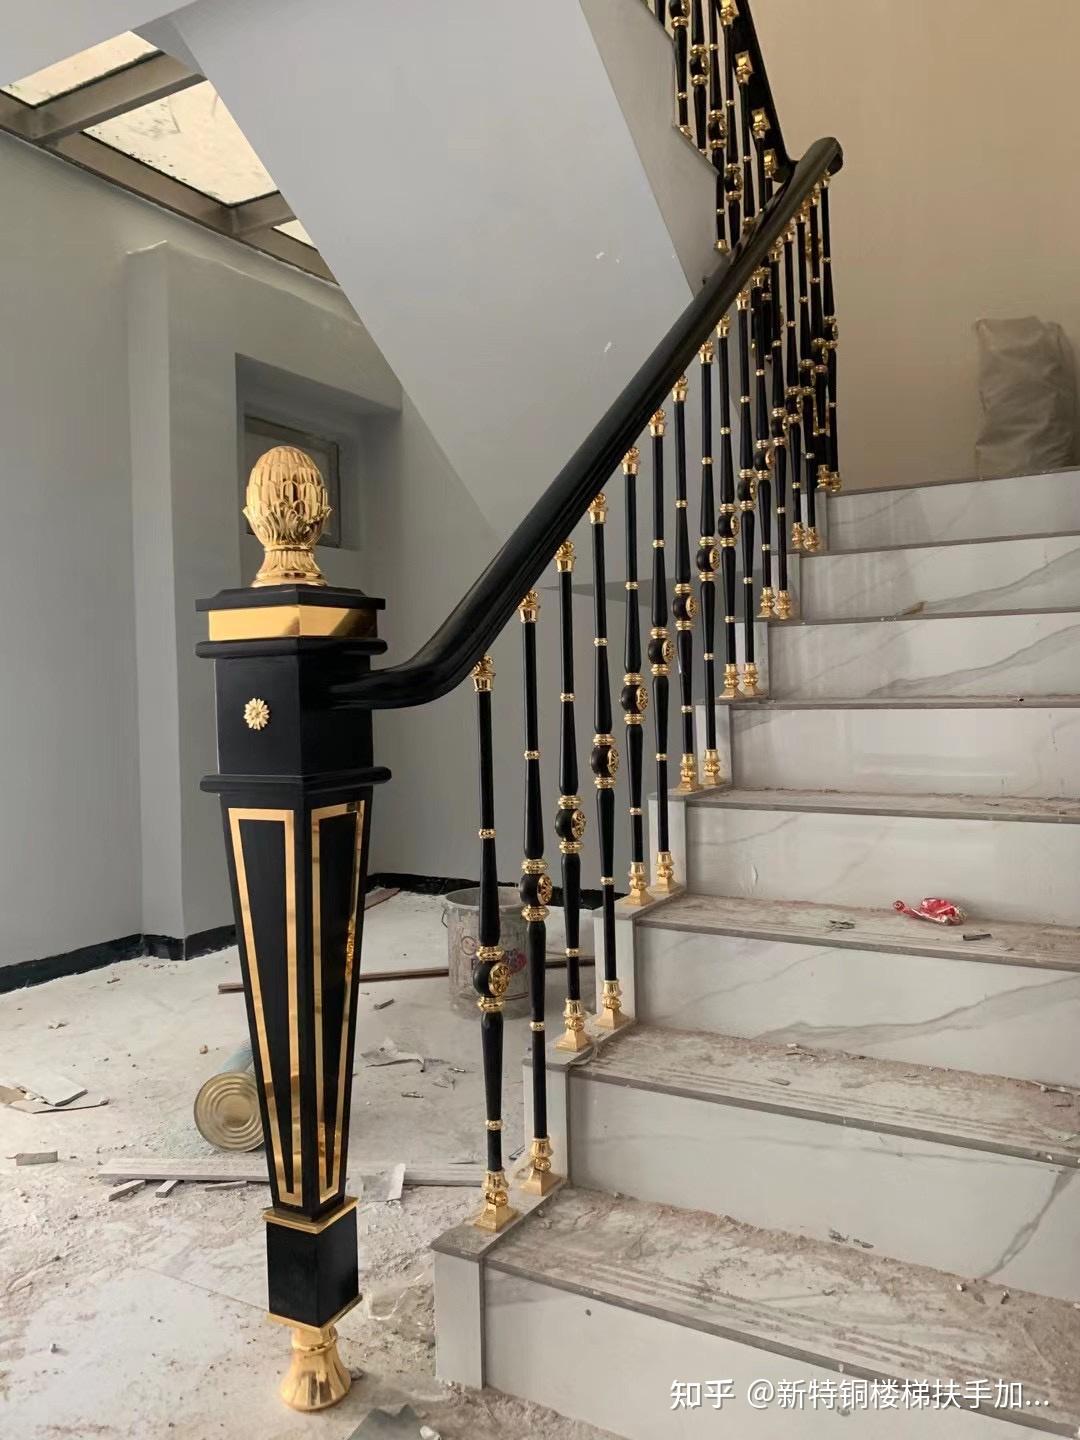 铜雕花楼梯护栏新型楼梯立柱: 目前家装市场占有率大,其材质本身给人